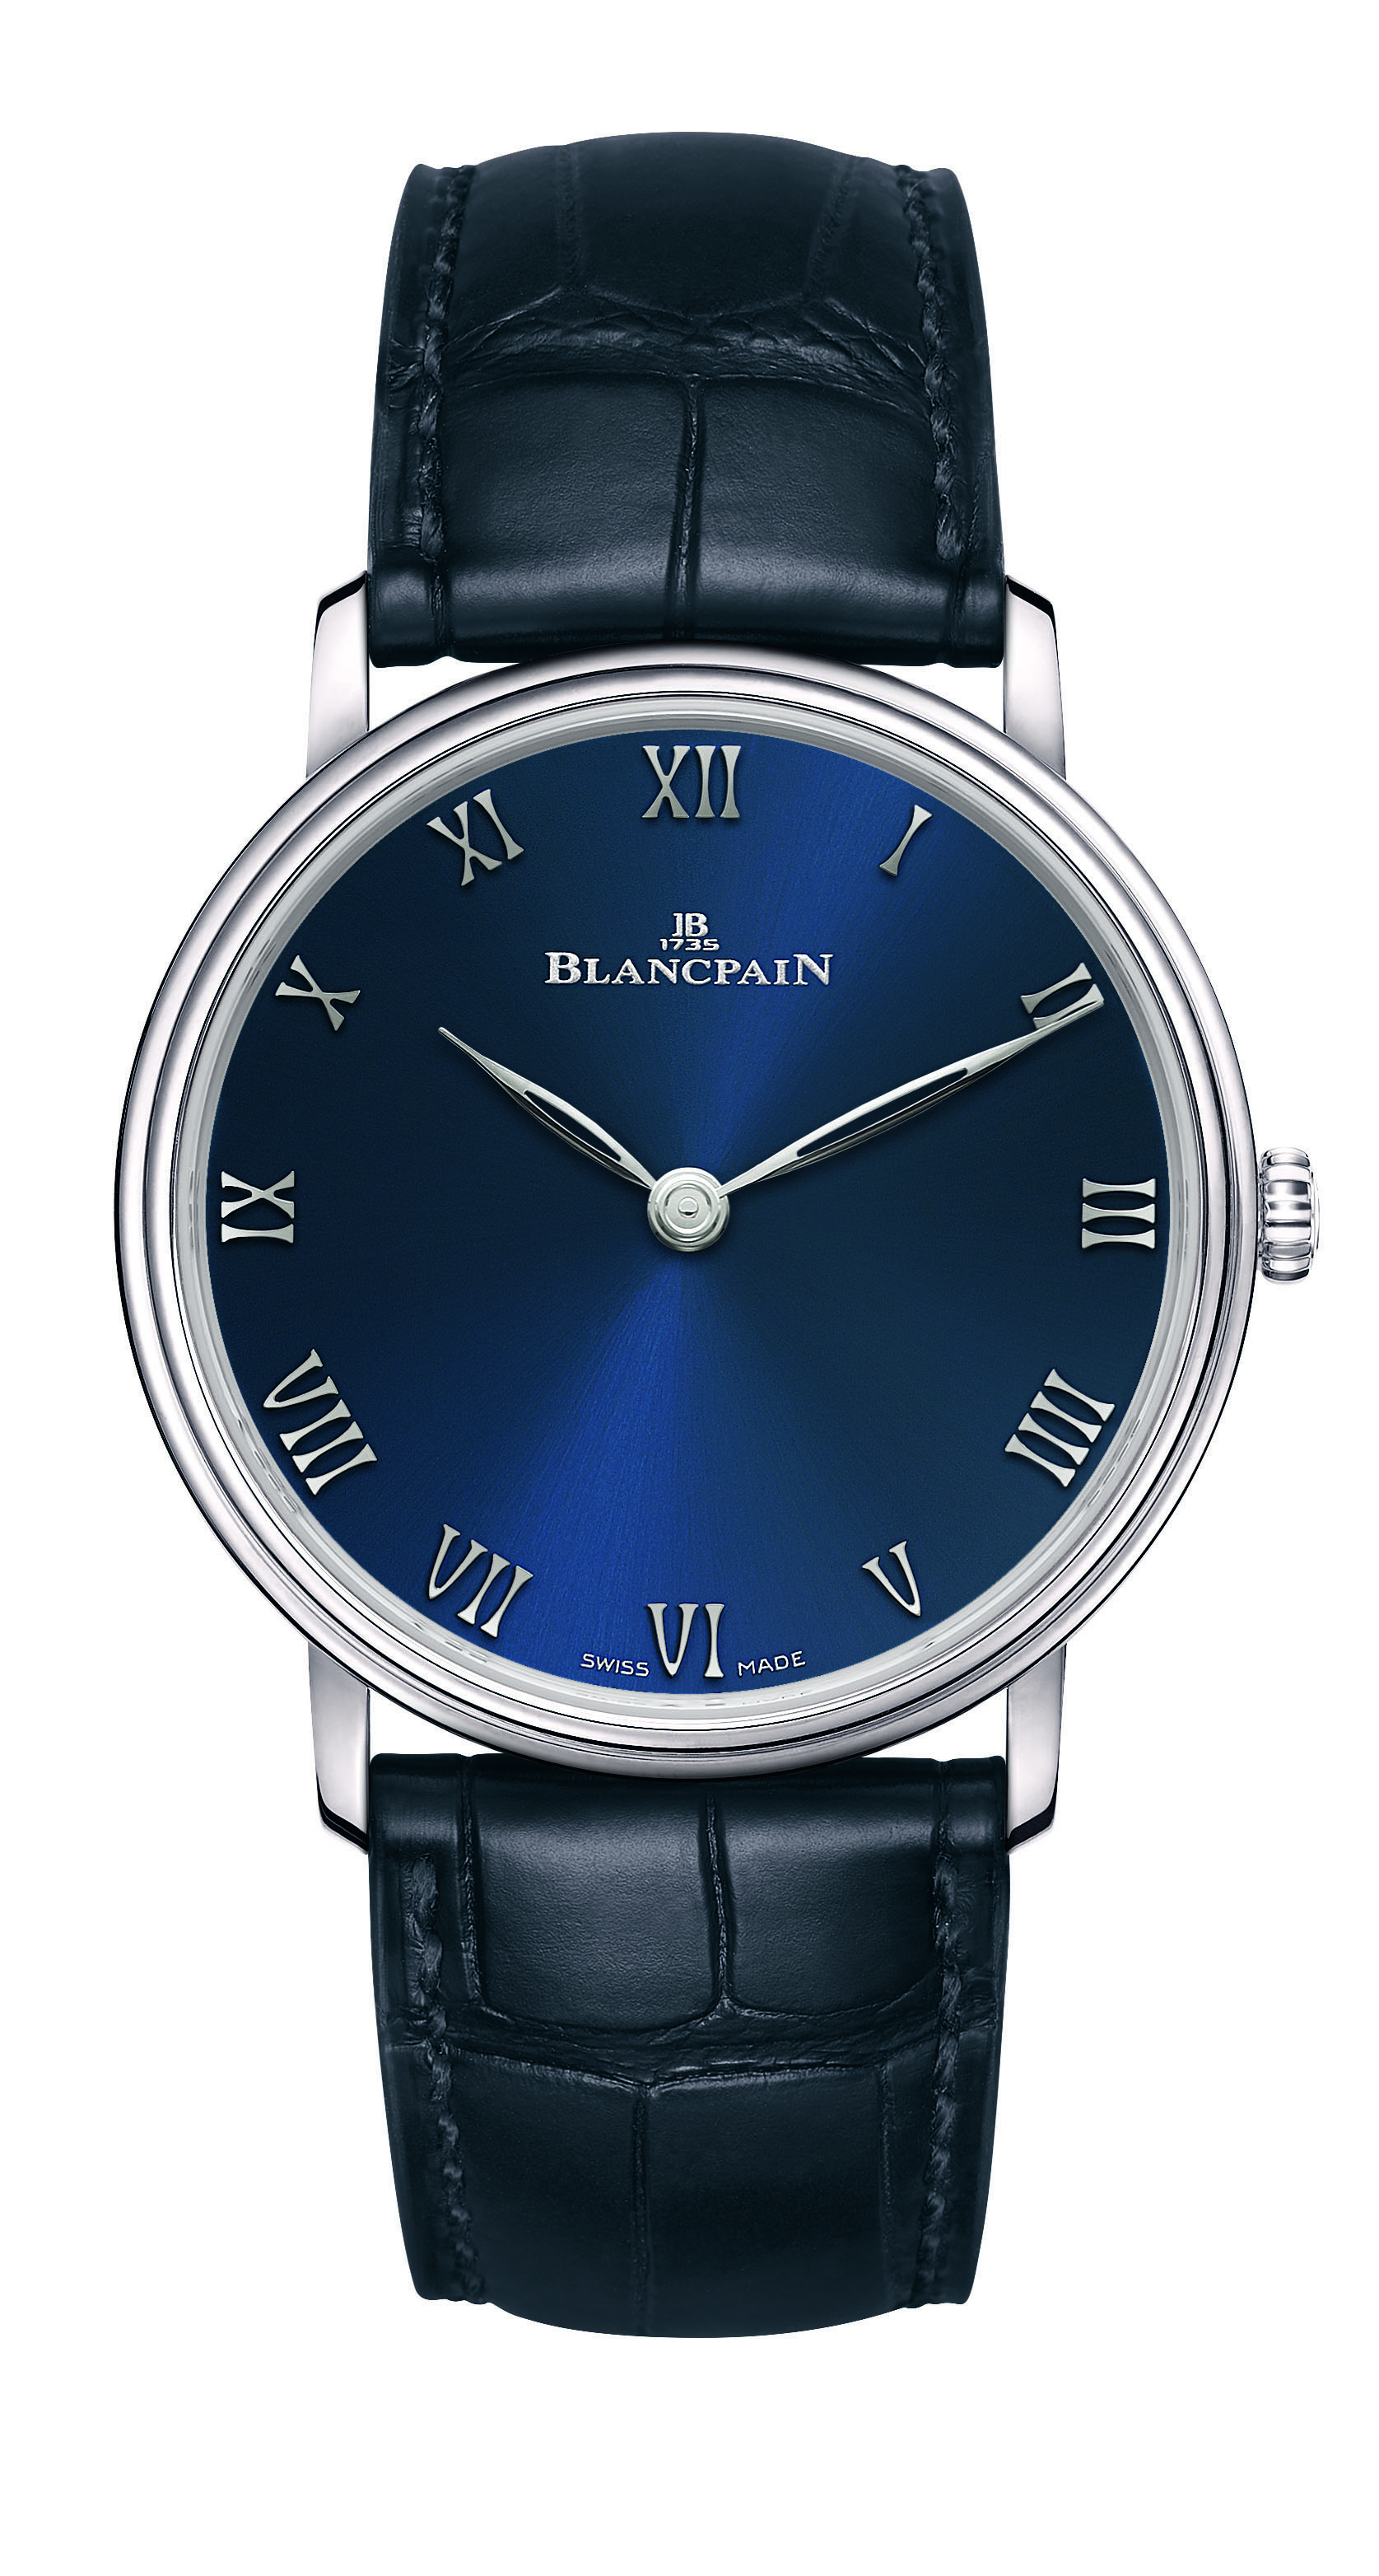 令人心动的深邃蓝   宝珀blancpain推出villeret经典系列超薄腕表限量